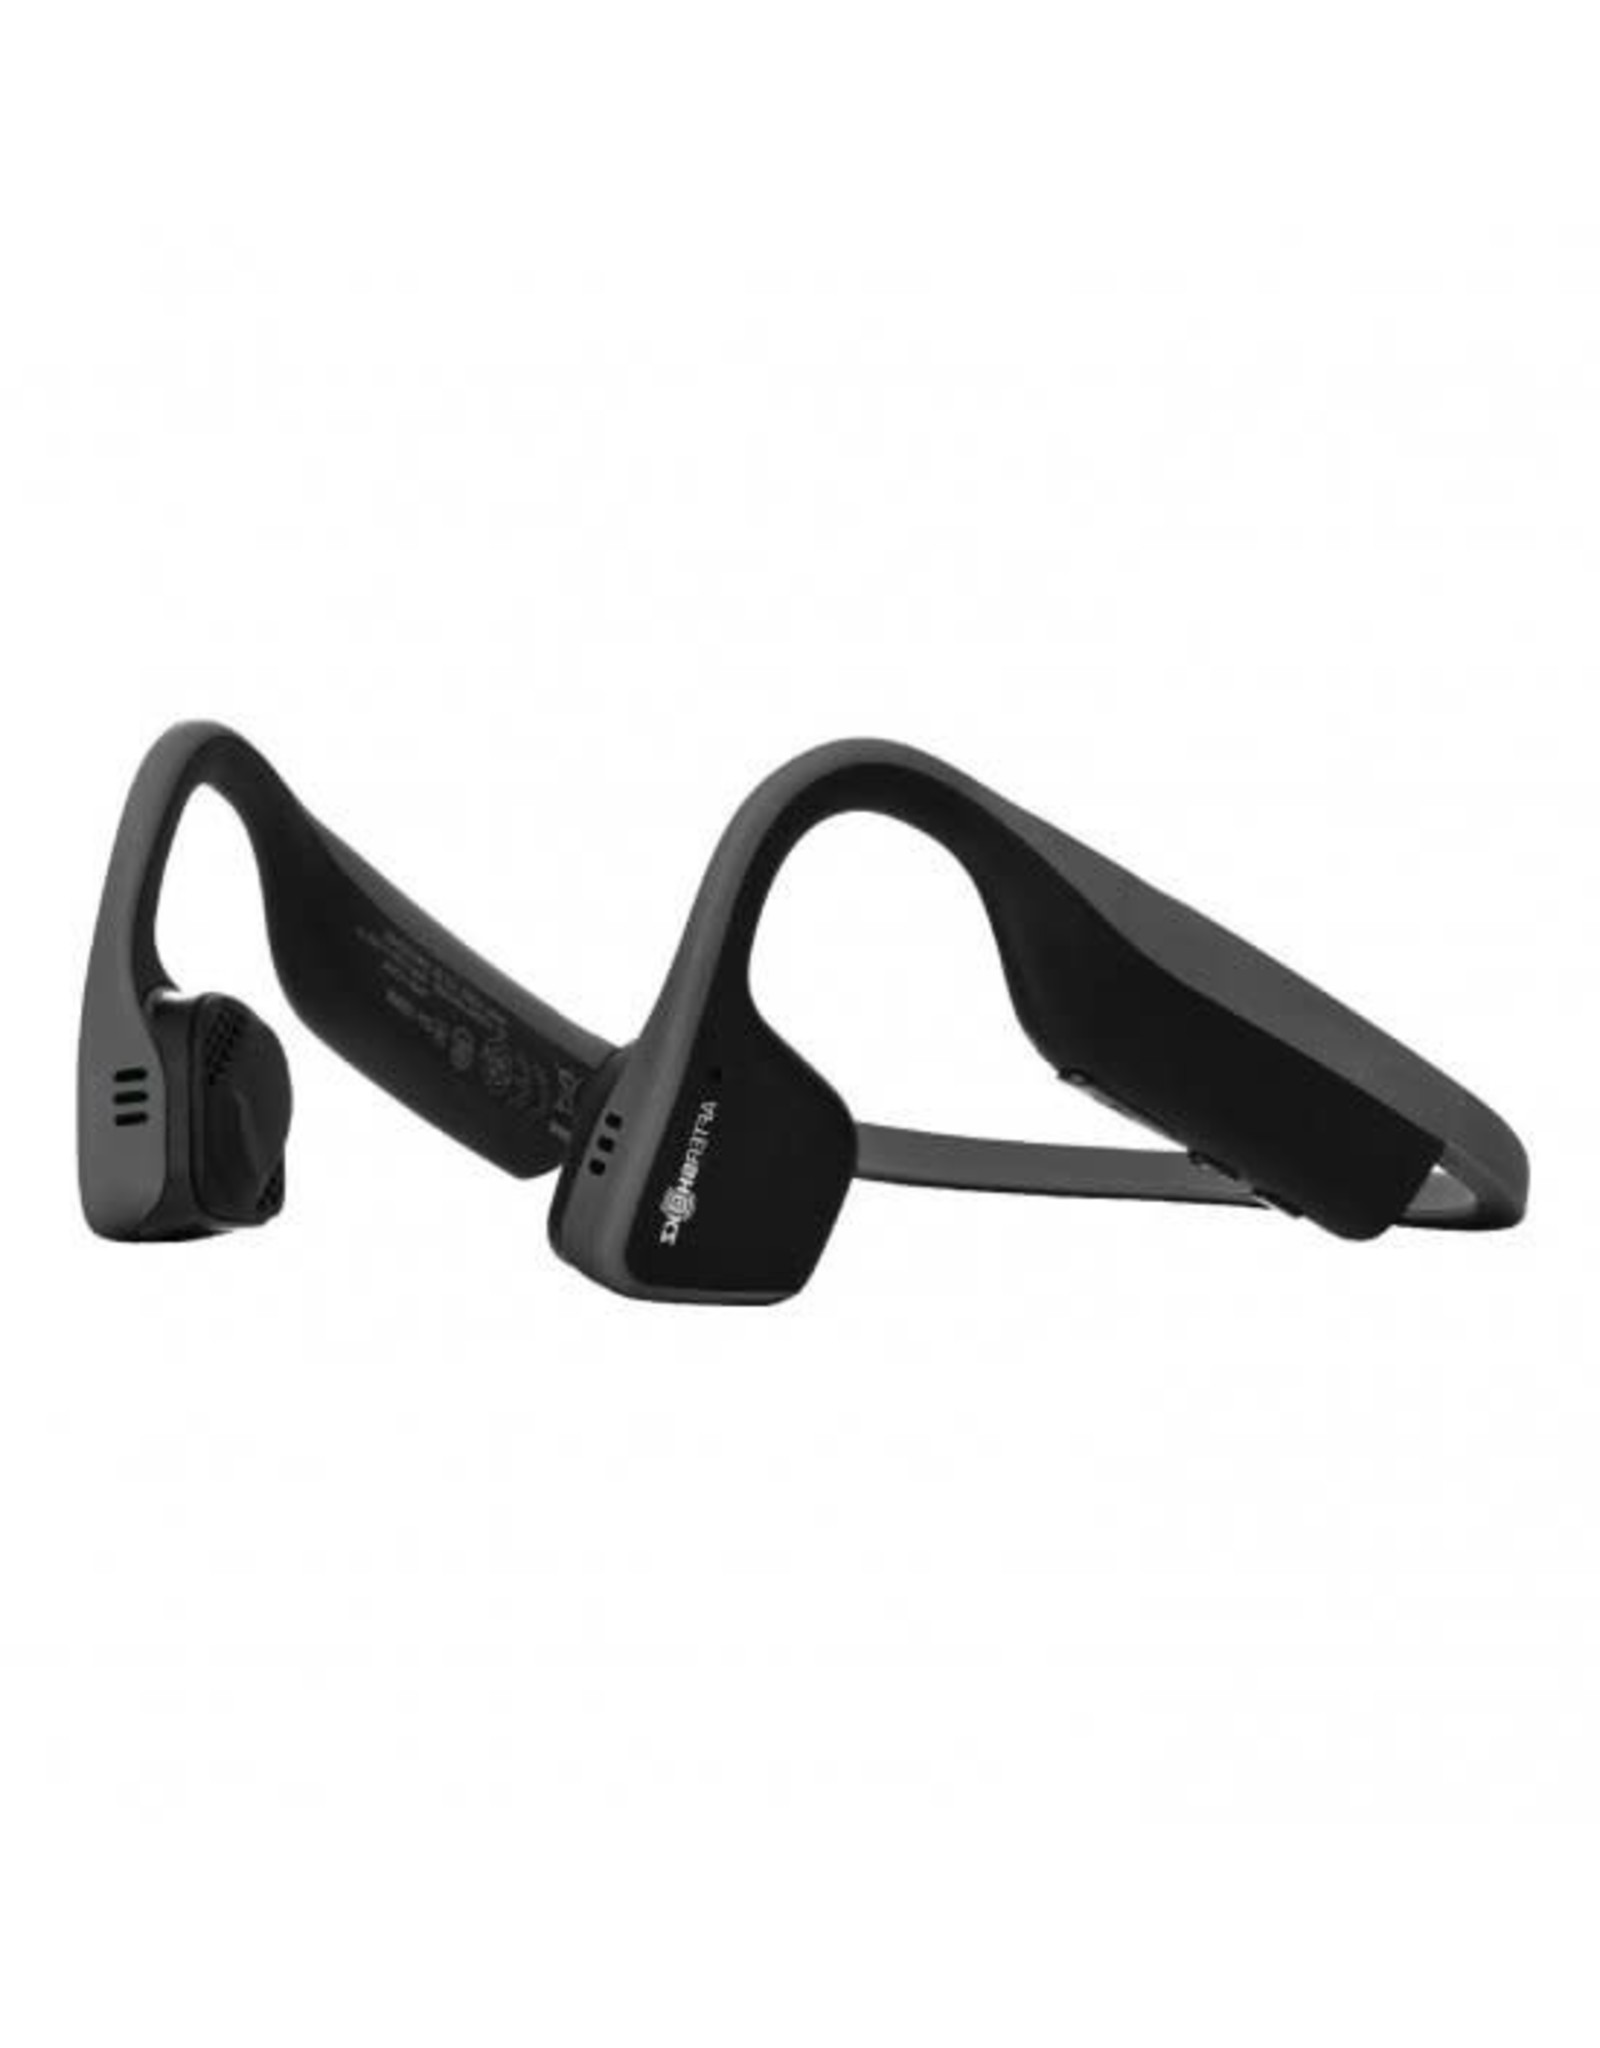 Aftershokz Aftershokz Titanium Bluetooth 4.1 Headphones Slate Grey  SKU:44351